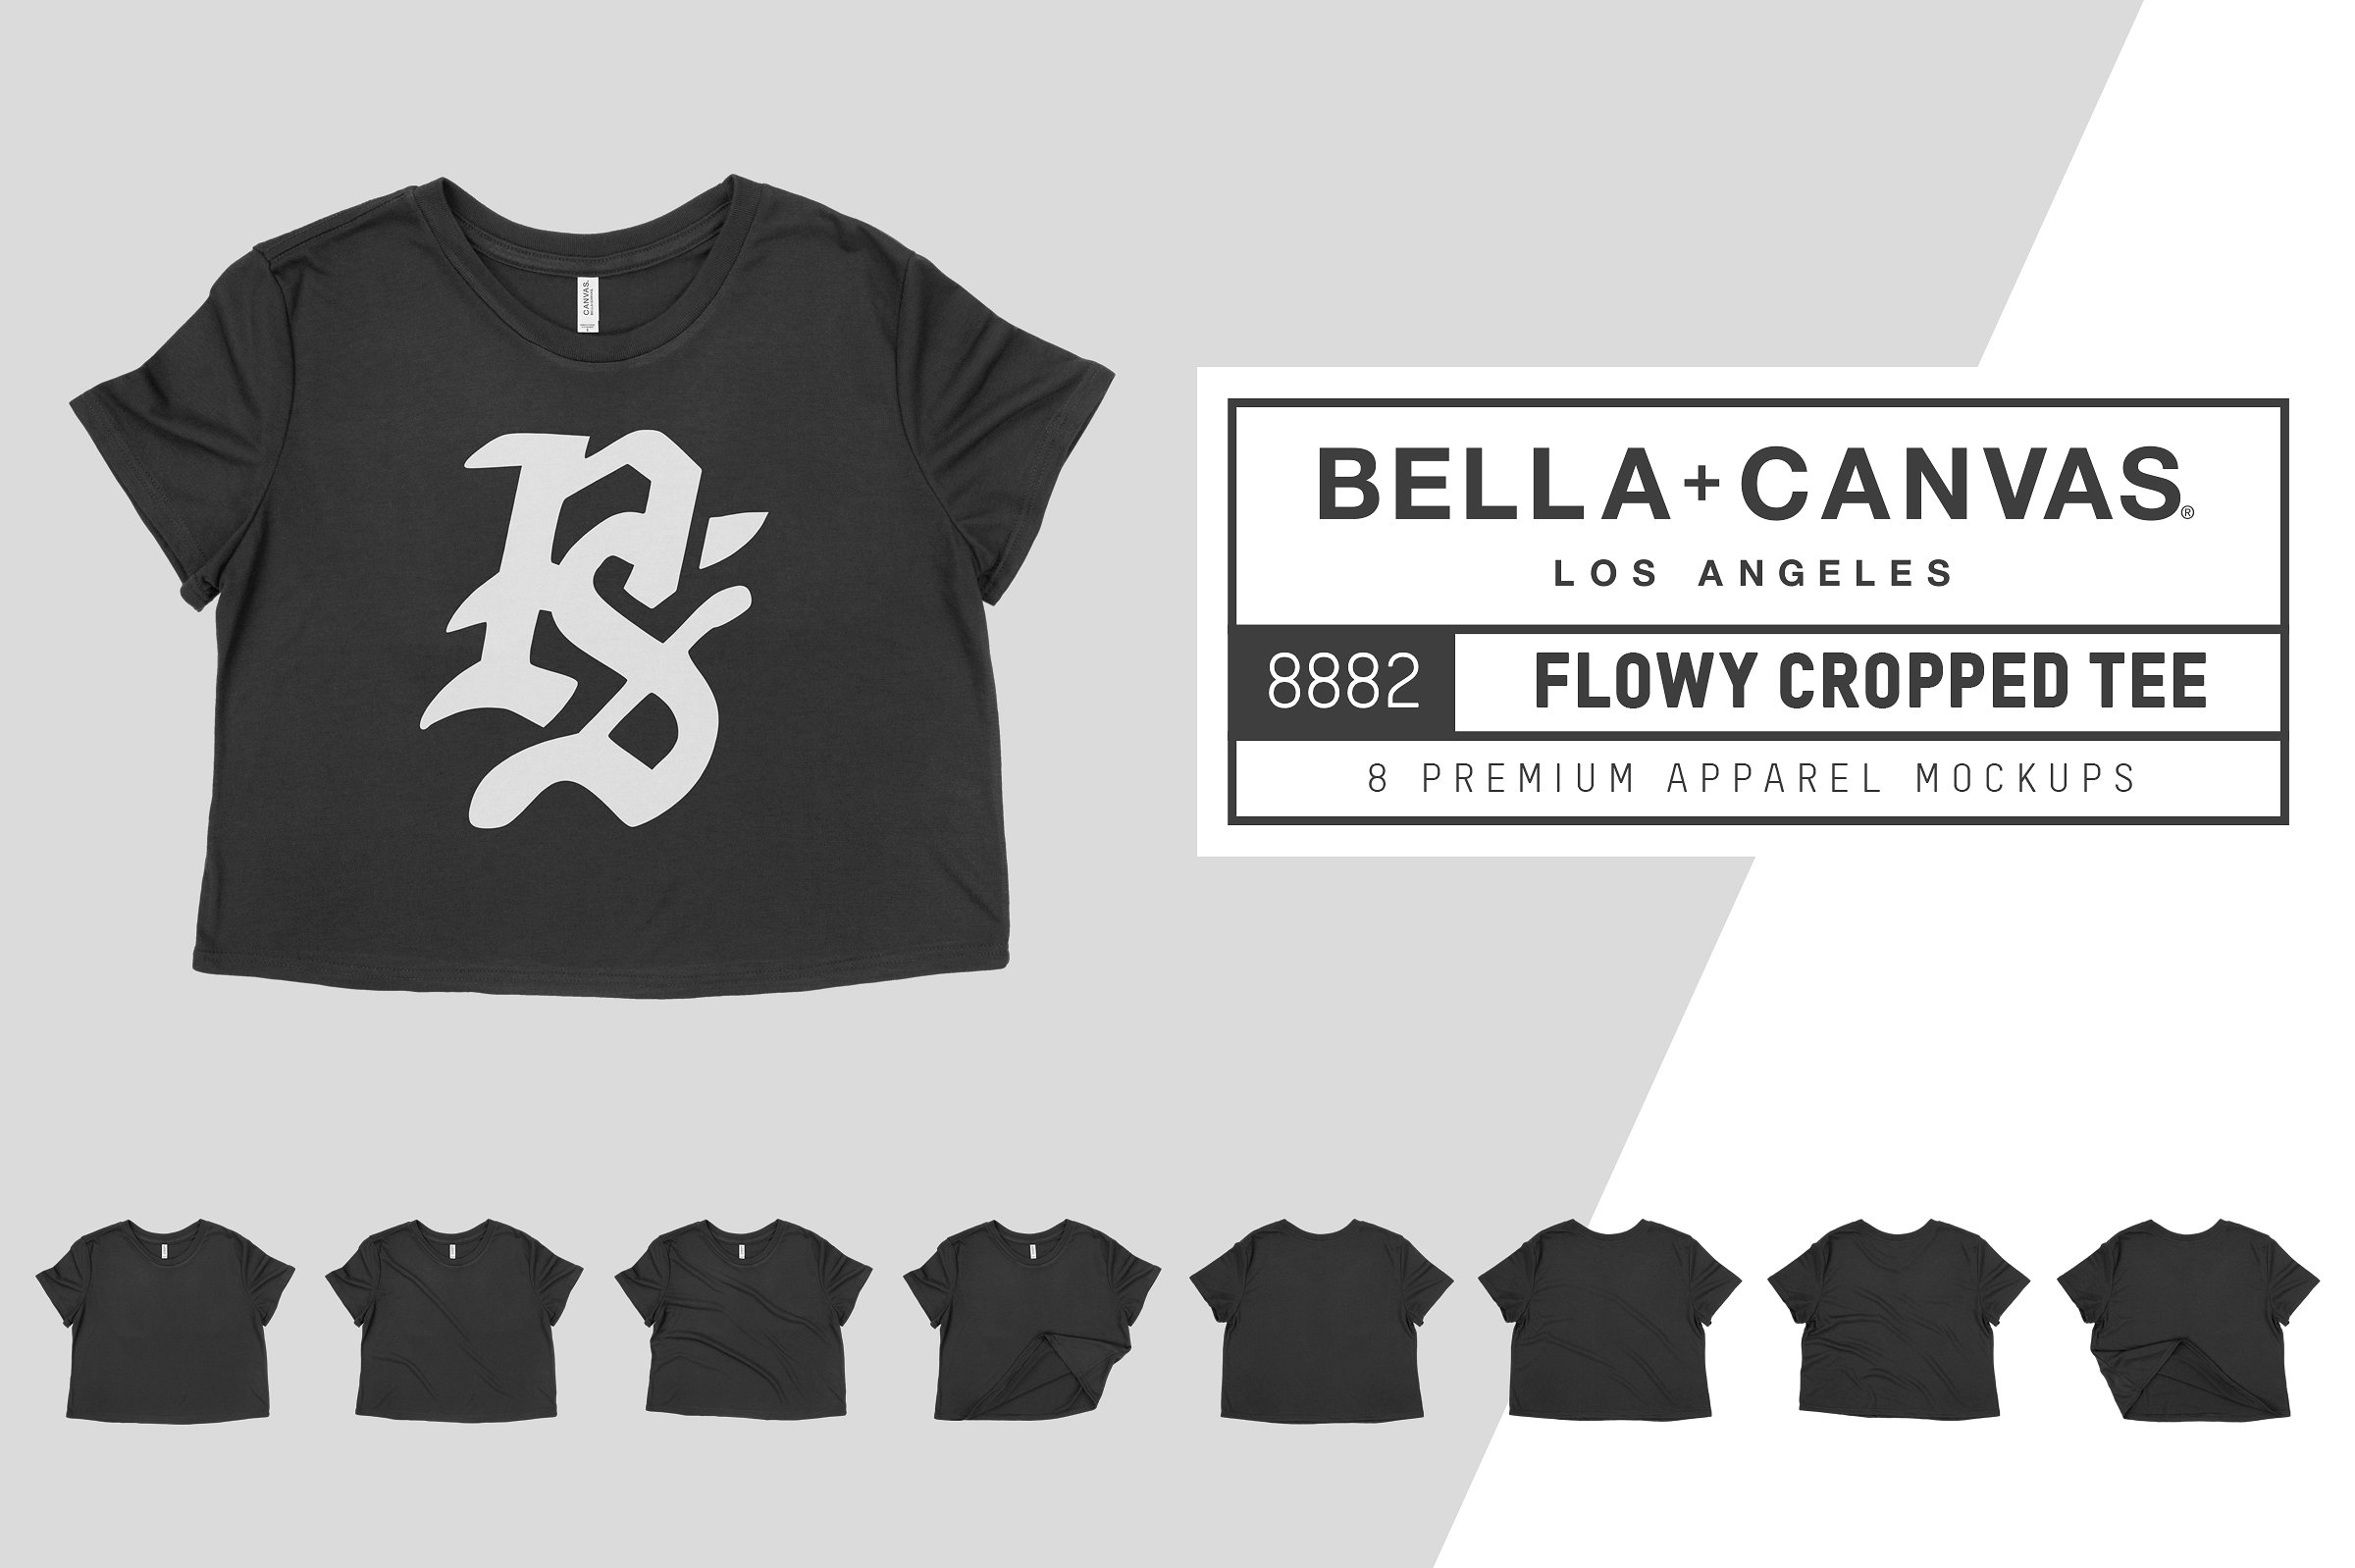 不规则短款T恤服装样机 Bella Canvas 8882 Flowy Cropped Tee插图